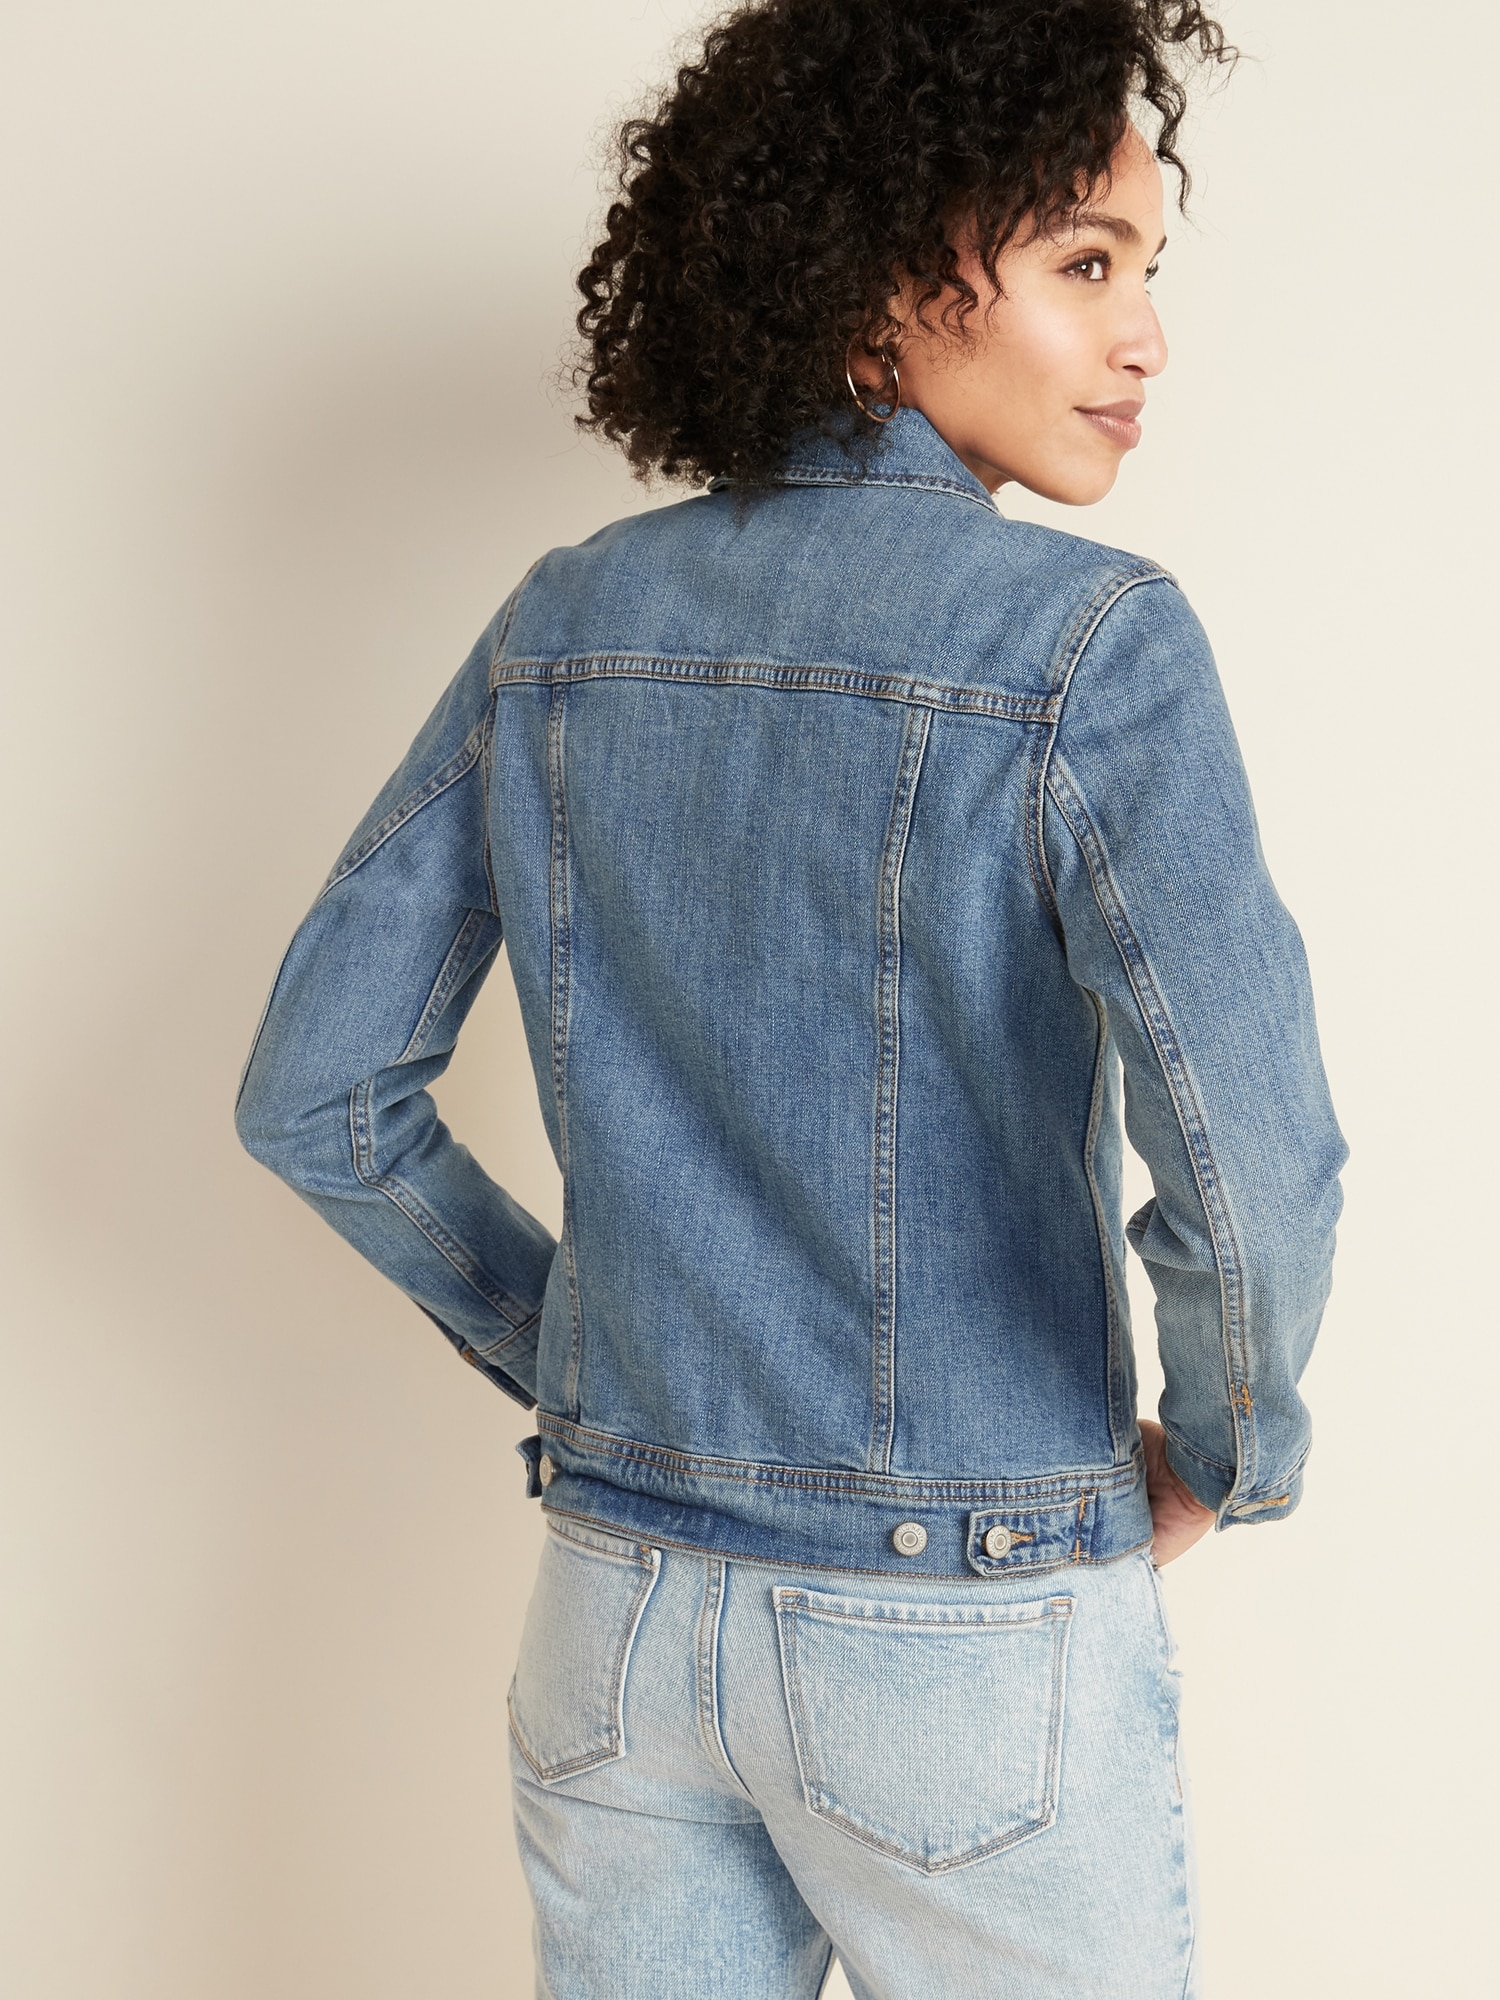 gap womens jean jacket